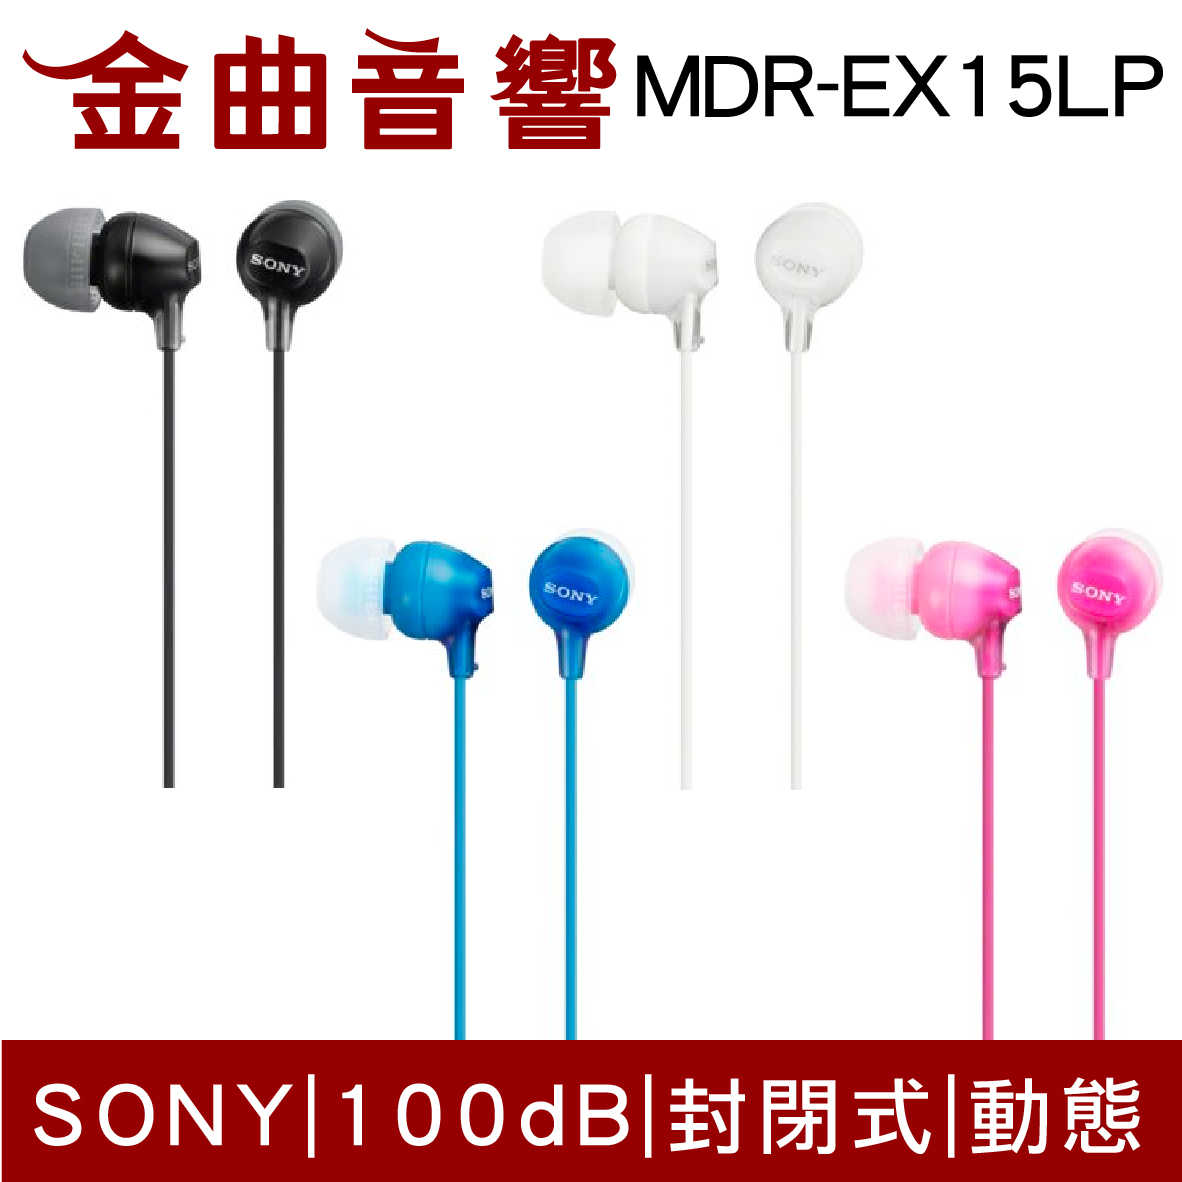 SONY 索尼 MDR-EX15LP 線控 麥克風 APPLE 安卓 耳道式耳機 MDR-EX15AP | 金曲音響